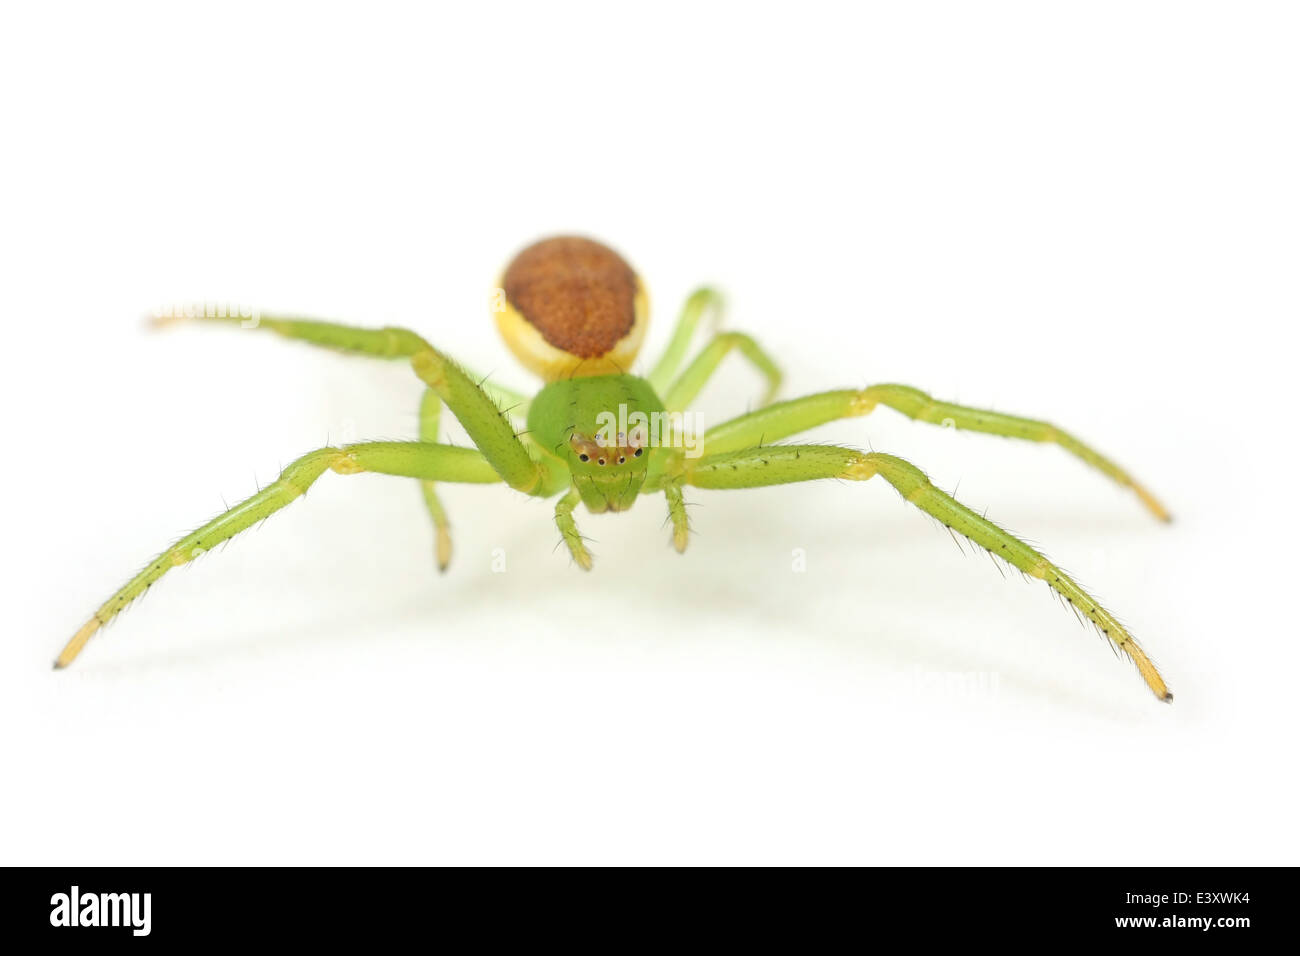 Weibliche Diaea Dorsata Spinne, Teil der Familie Thomisidae (Krabben Spinnen). Isoliert auf weißem Hintergrund. Stockfoto